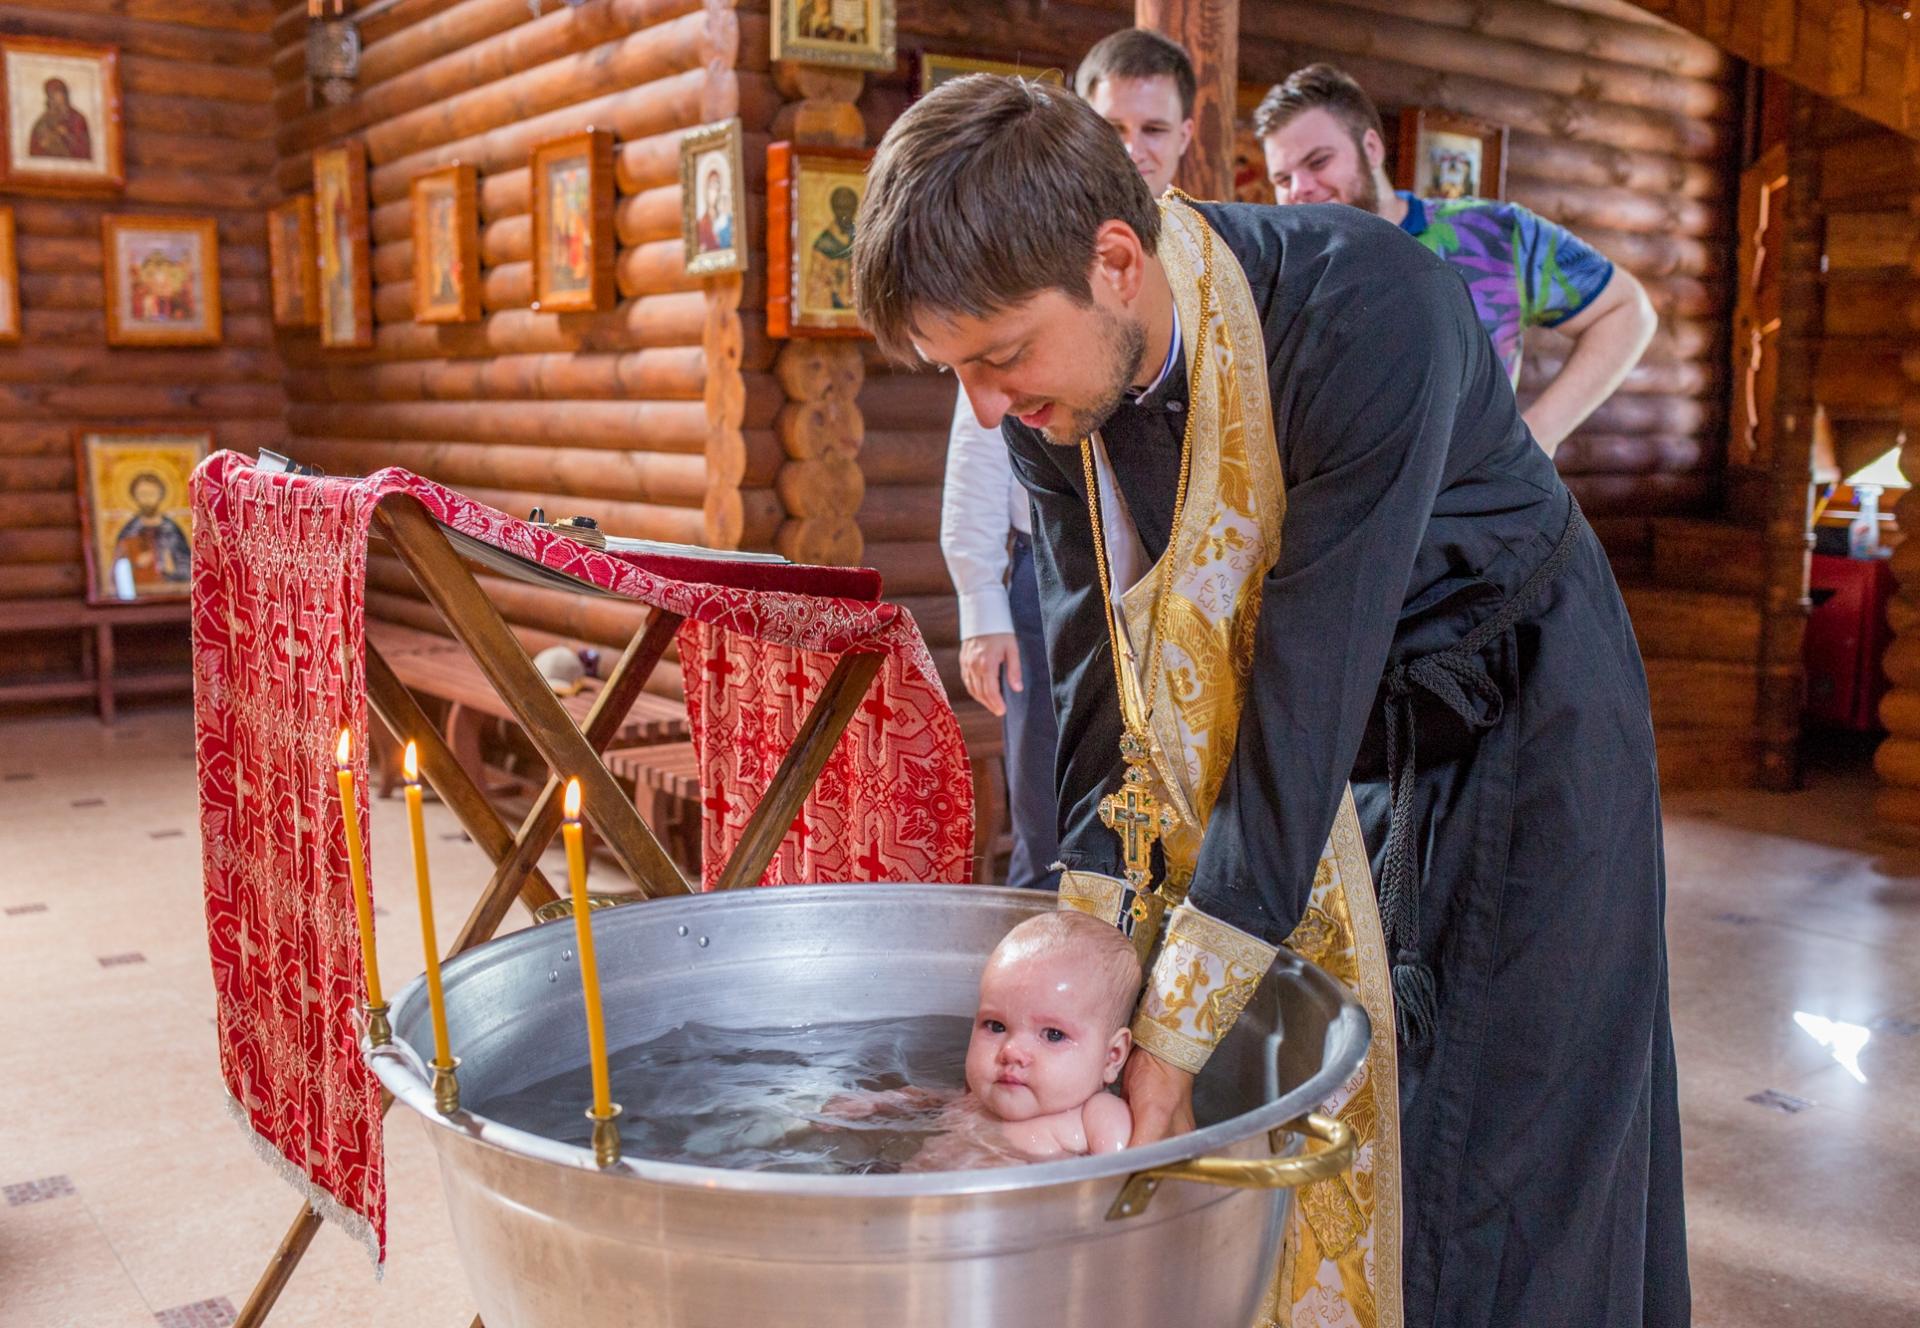 Крестят ли детей в воскресенье. Таинство крещения в православной церкви. Крестины в церкви. Обряд крещения в храме младенца. Крещение младенца в храме.